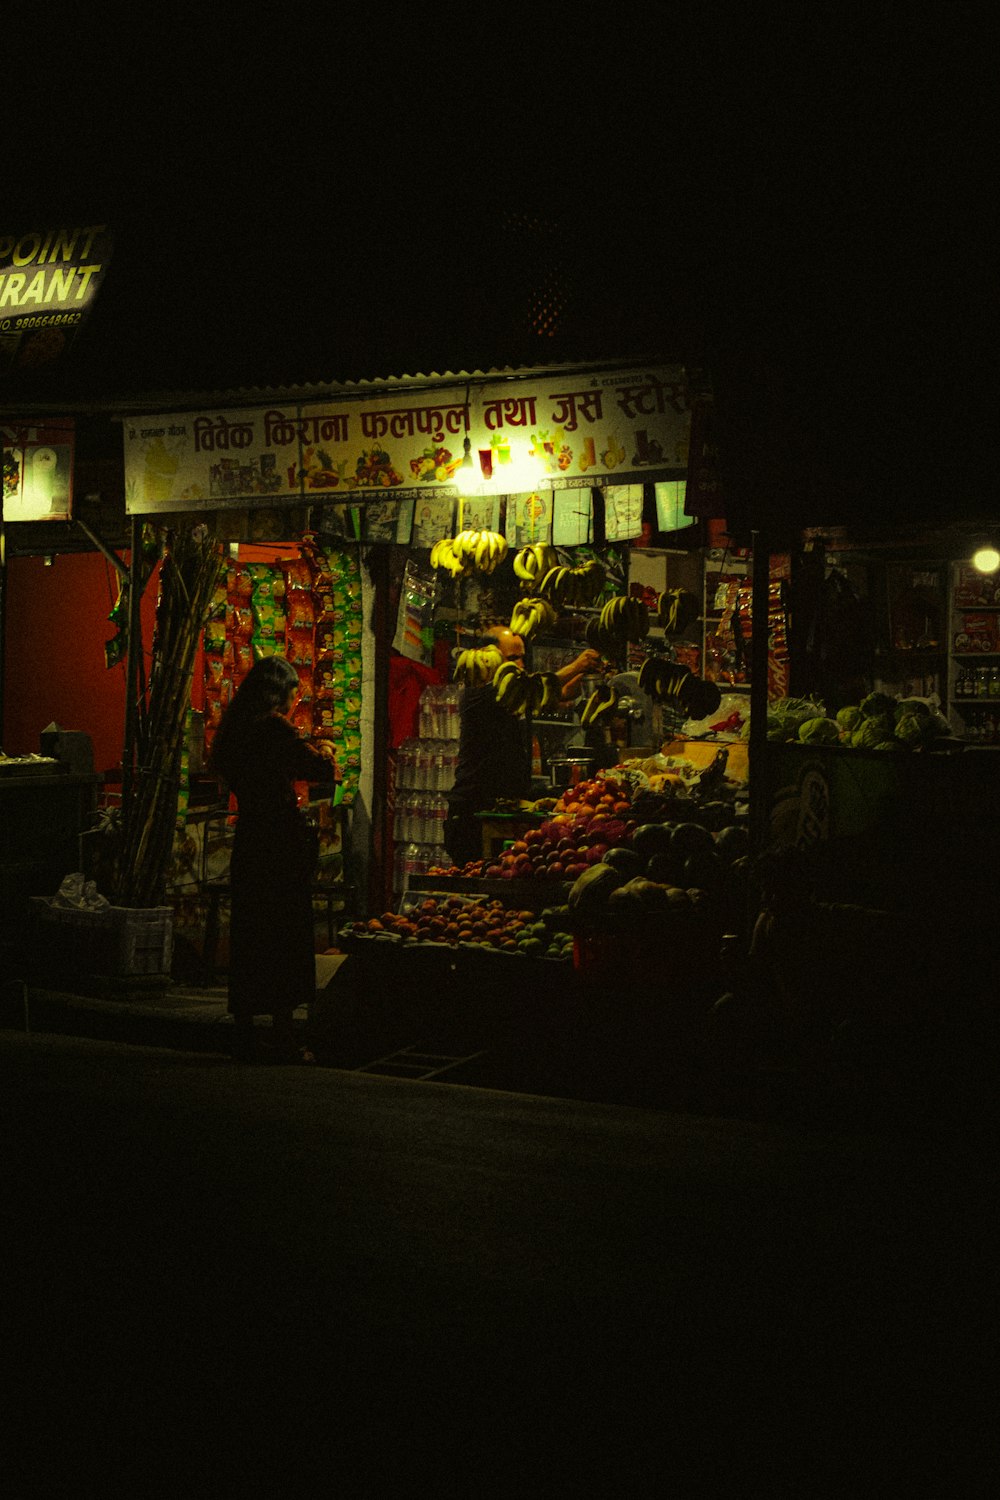 une personne debout devant un stand de fruits la nuit